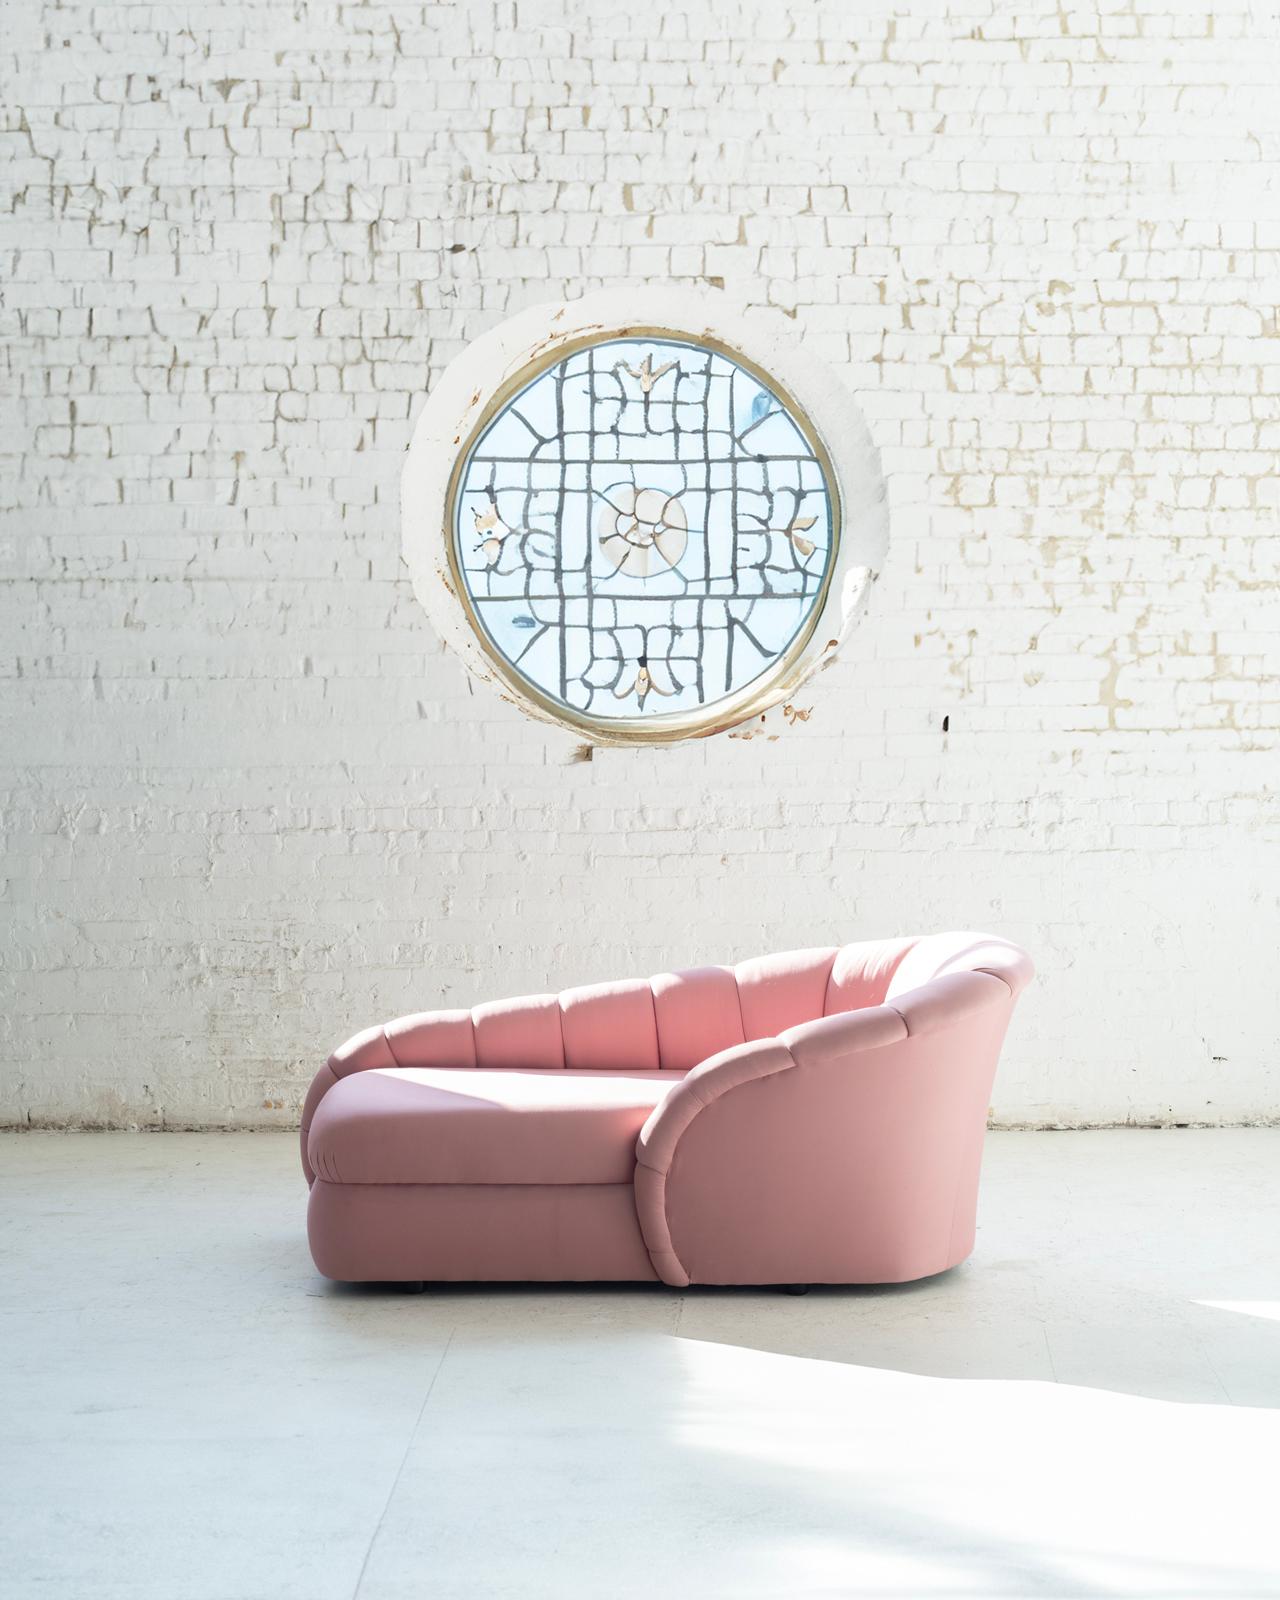 Diese Mauve Scalloped Chaise Lounge ist ein Meisterwerk, das Vladimir Kagan in den 1980er Jahren für Directional entworfen hat. Er strahlt zeitlose Eleganz und Raffinesse aus und stellt die renommierte Handwerkskunst und das innovative Design von